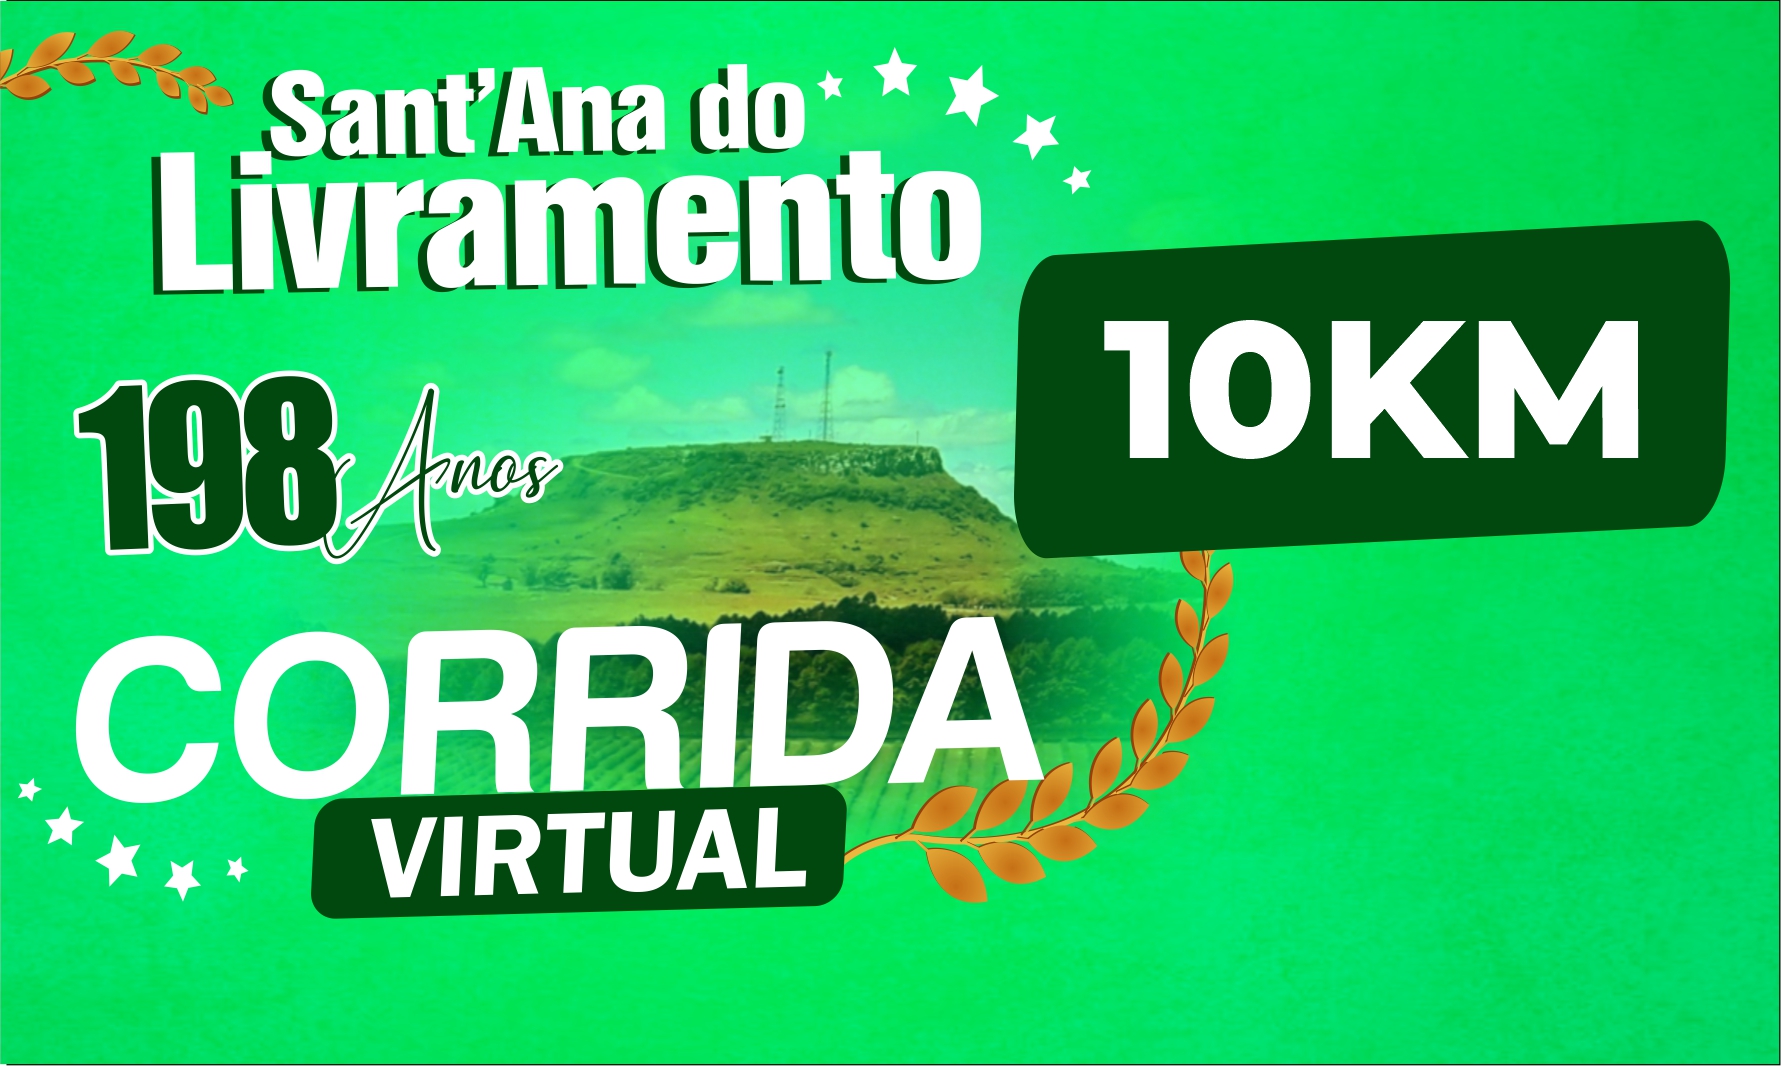 CORRIDA VIRTUAL 198 ANOS SANTANA DO LIVRAMENTO - 10KM